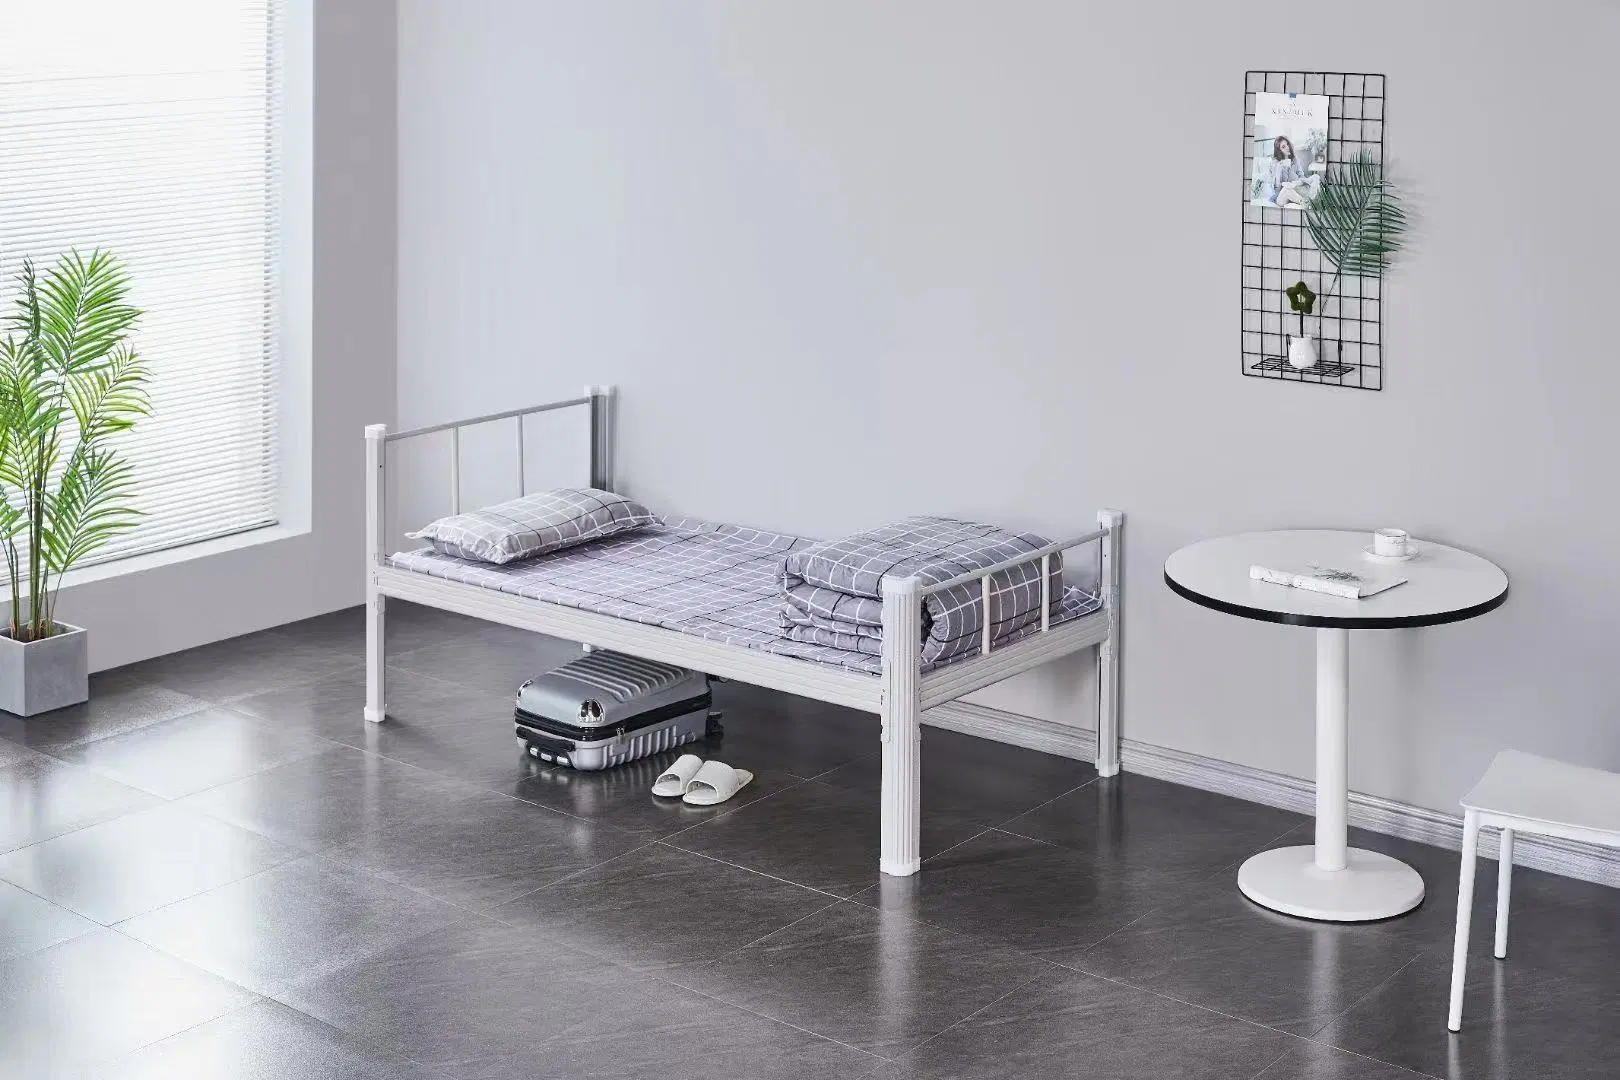 غرفة نوم معدنية حديثة متينة من نوع Bunk Bed من المعدن الأبيض